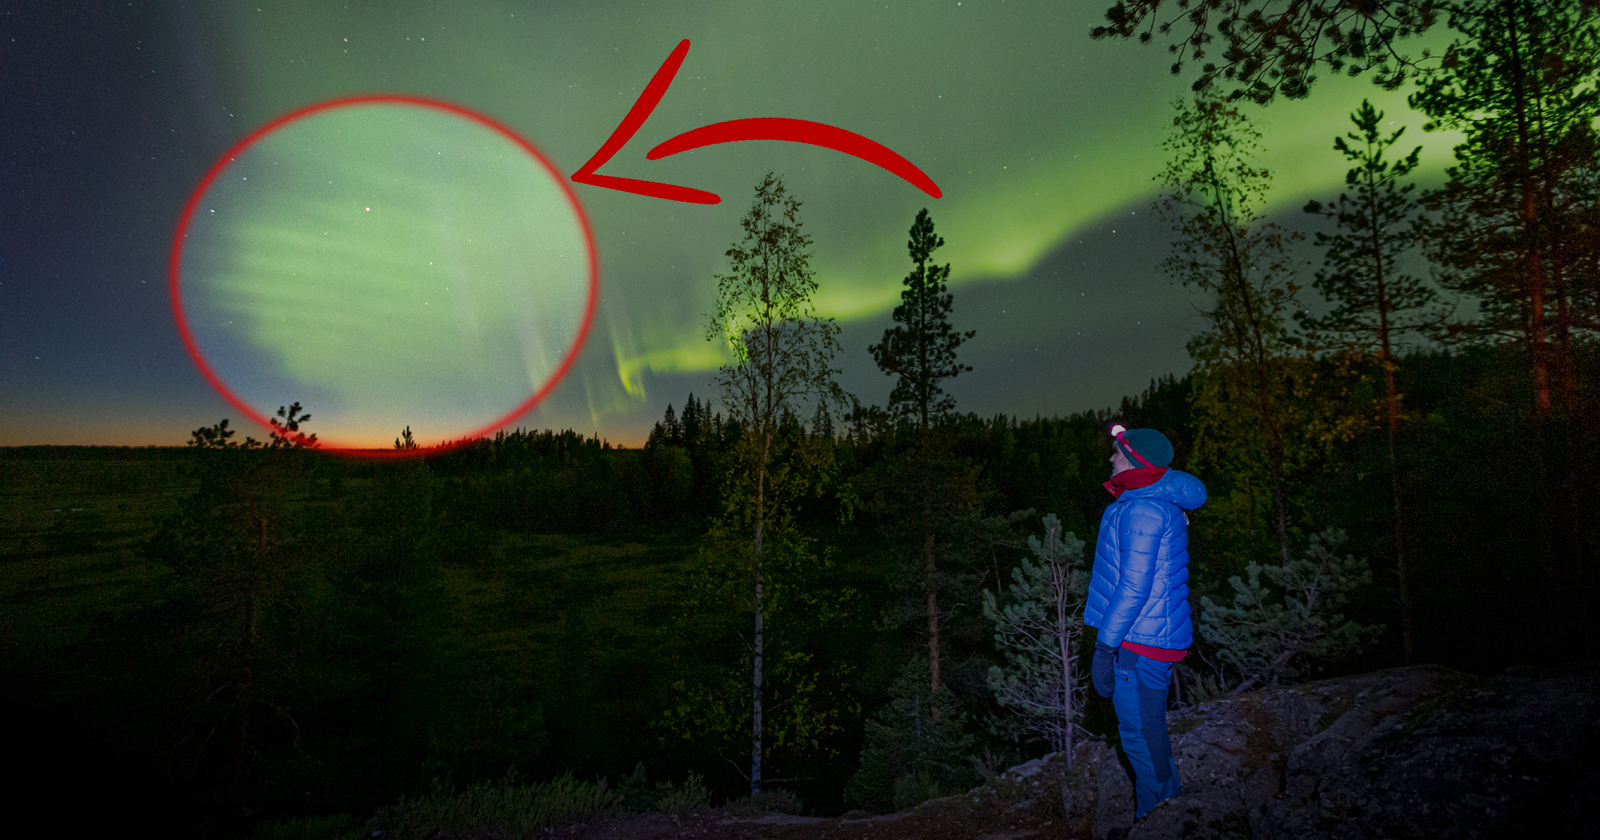 Los cazadores de Auroras han descubierto un nuevo tipo de aurora llamado "Dunas".